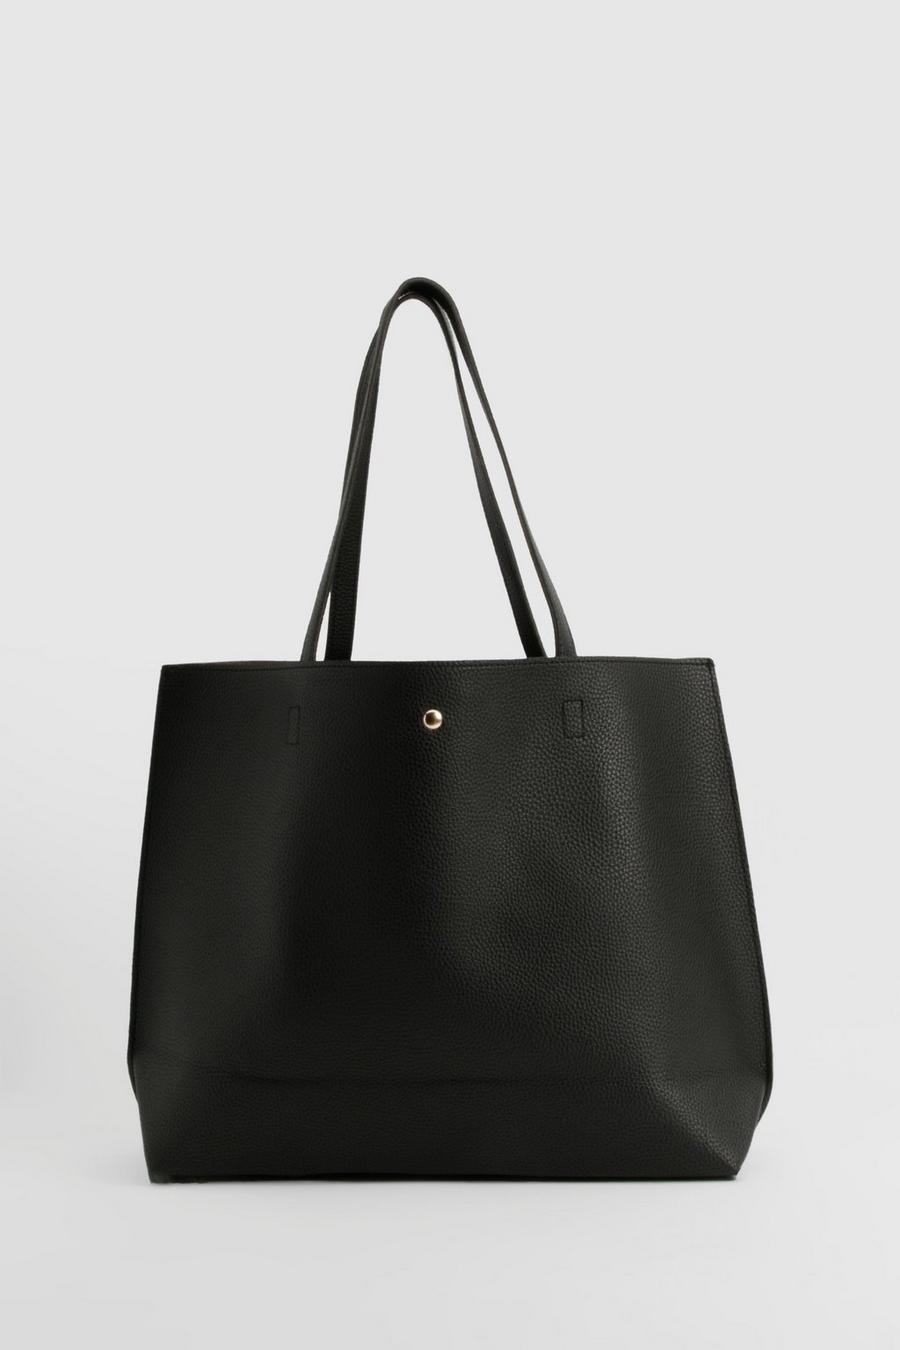 Black schwarz Large Popper Tote Shopper Bag